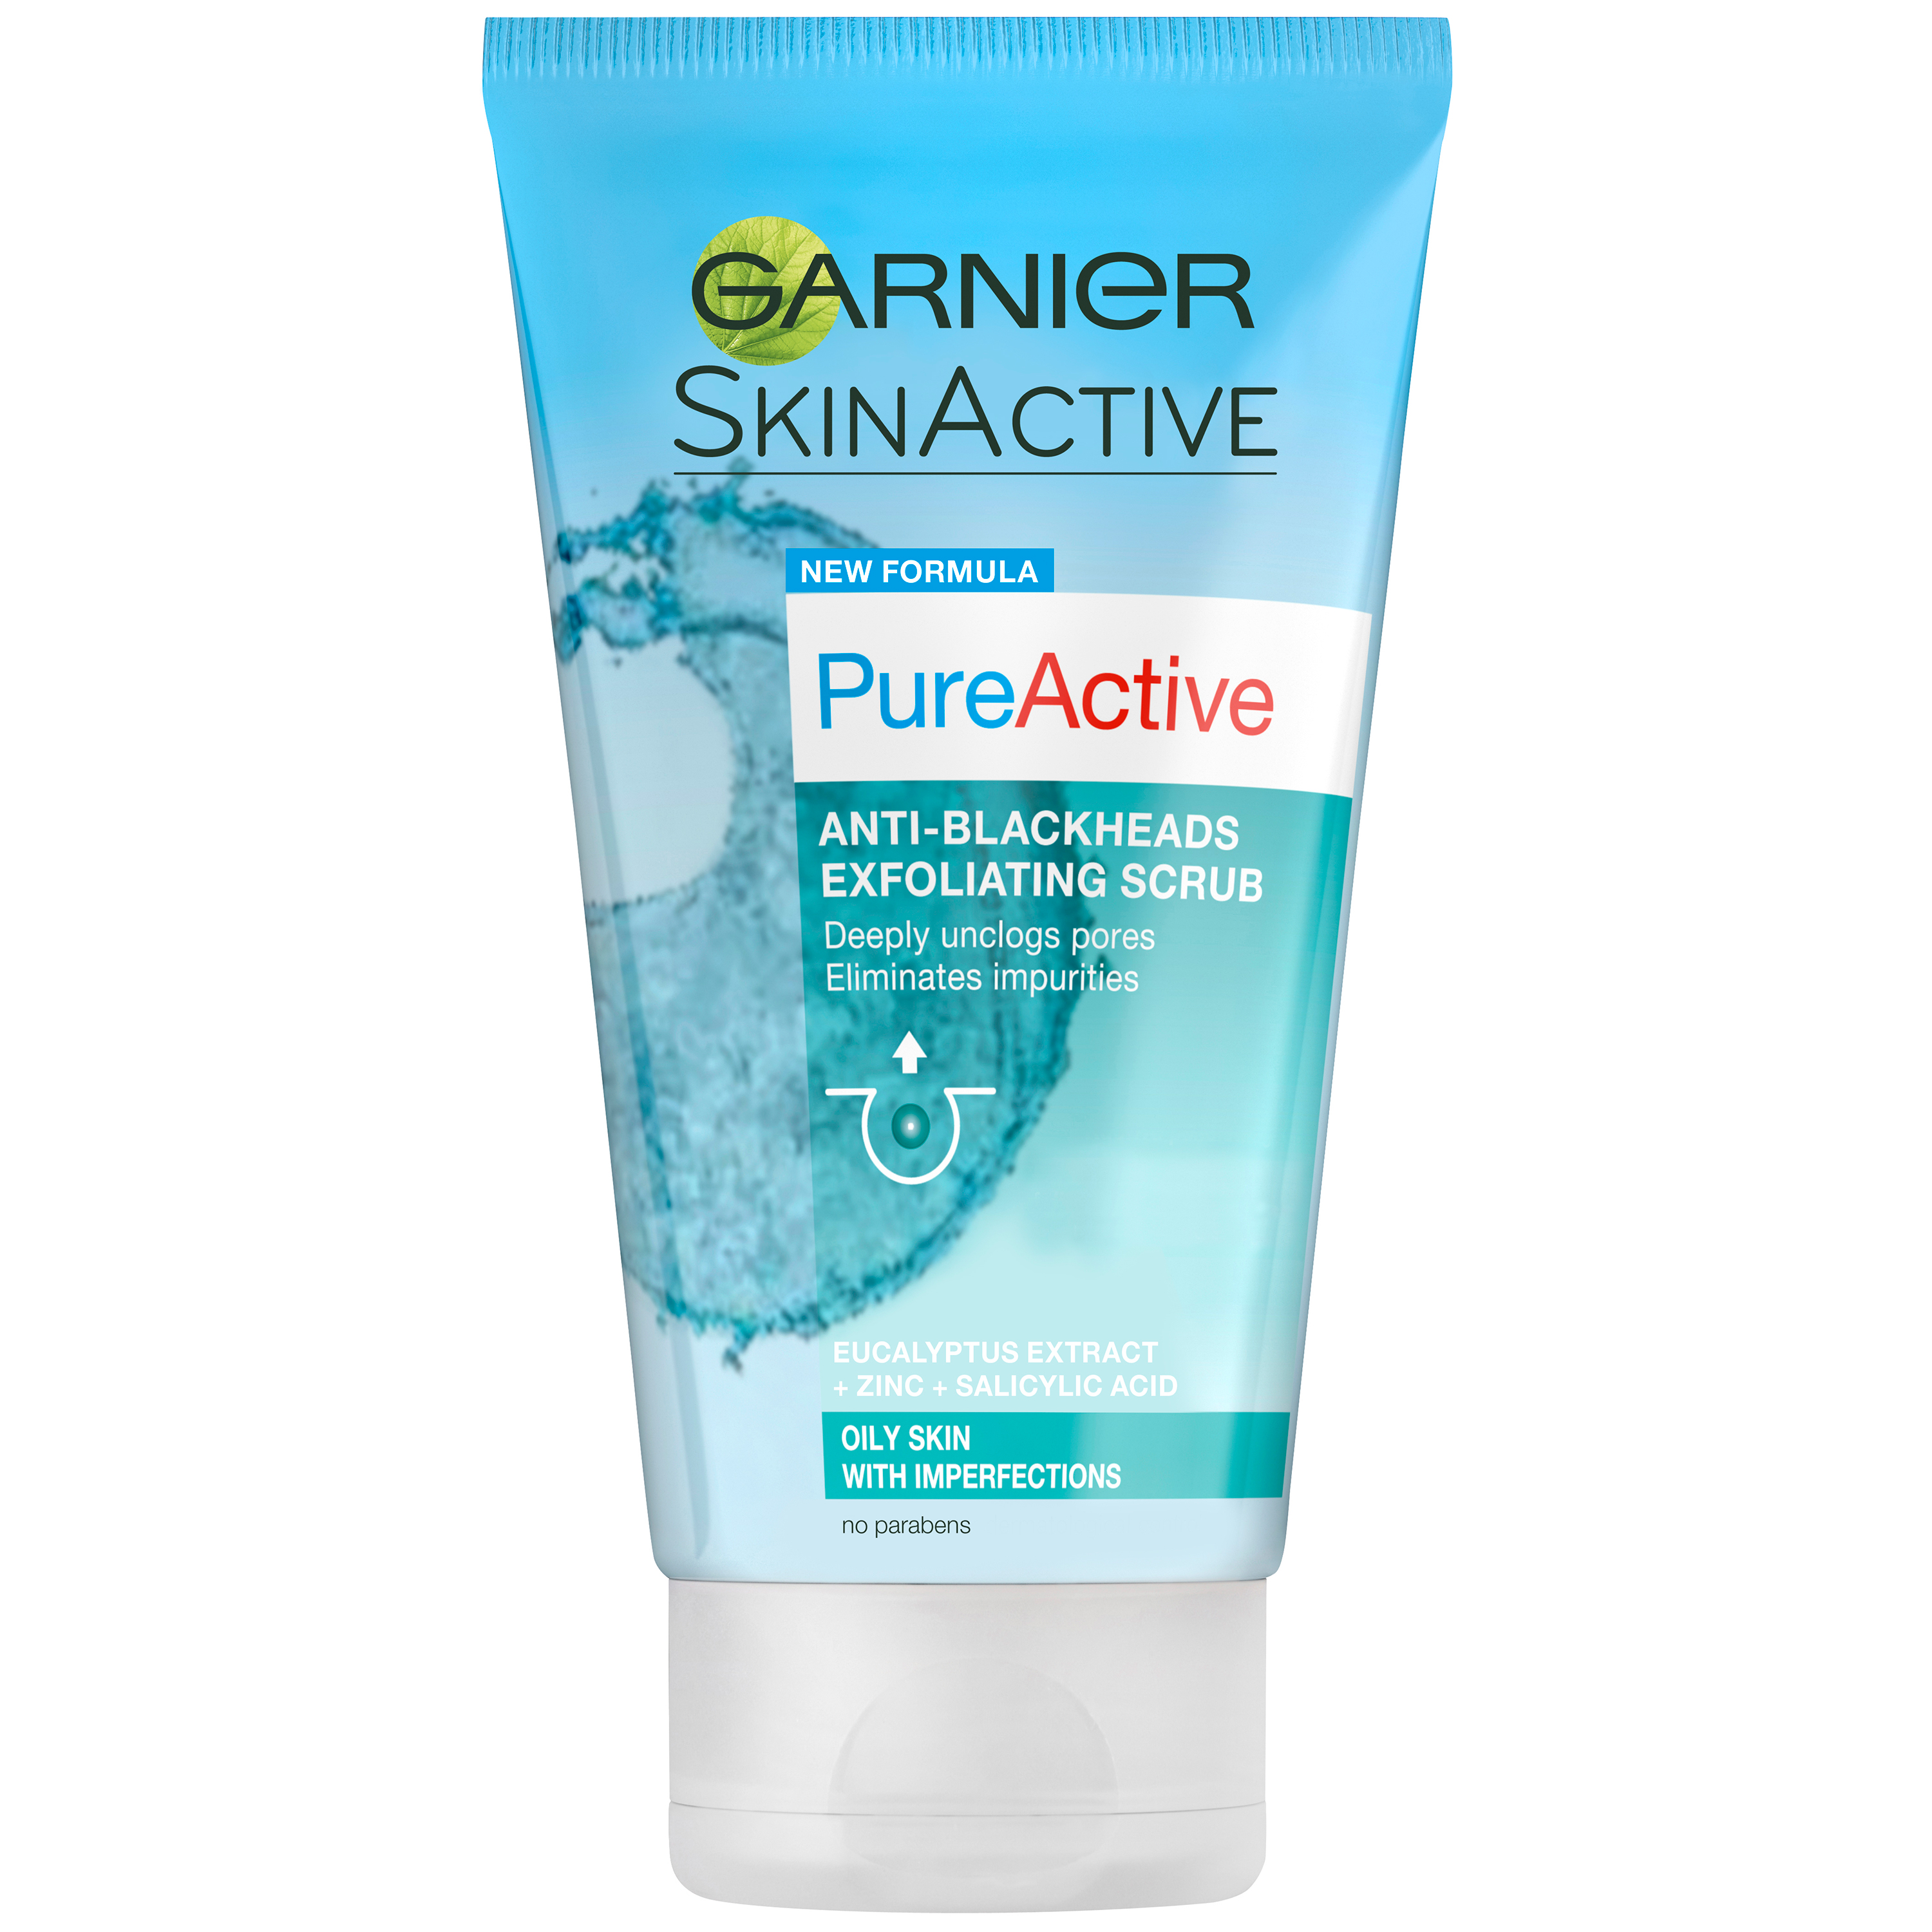 Скрабы для комбинированной кожи. Гарньер Pure Active face Wash. Garnier скраб. Garnier SKINACTIVE скраб. Garnier скраб для лица.